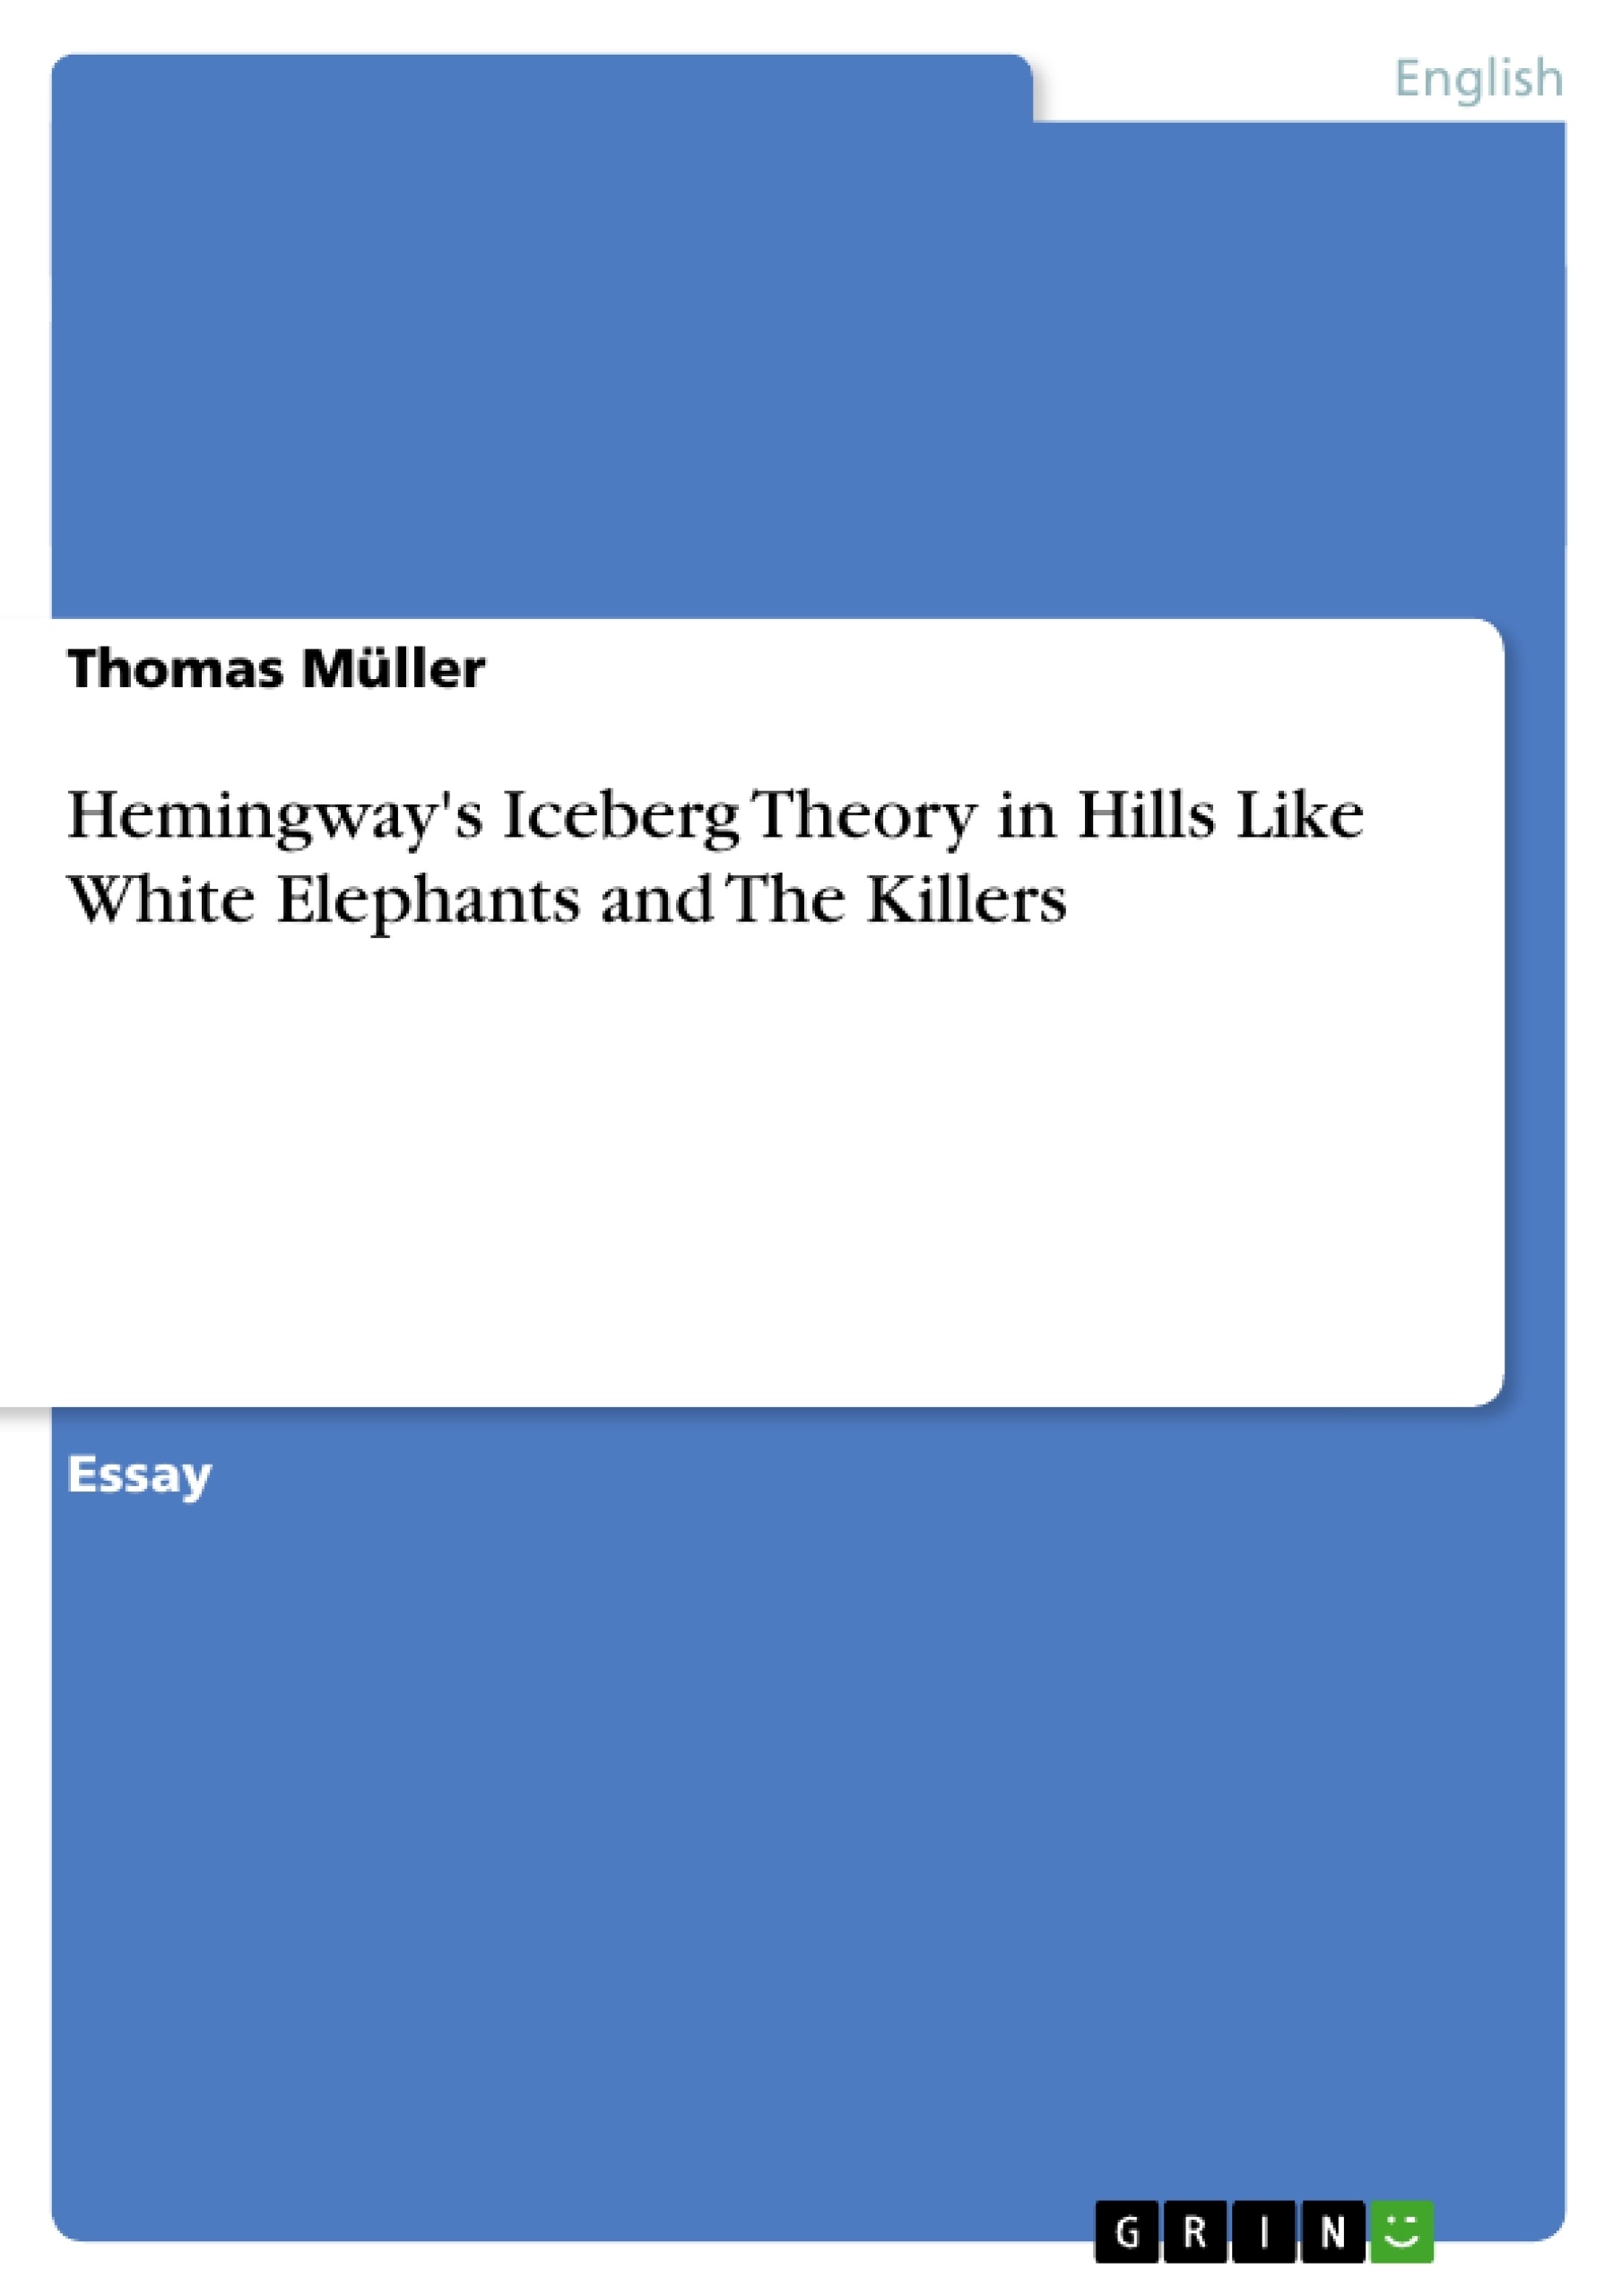 Essay hills like white elephants